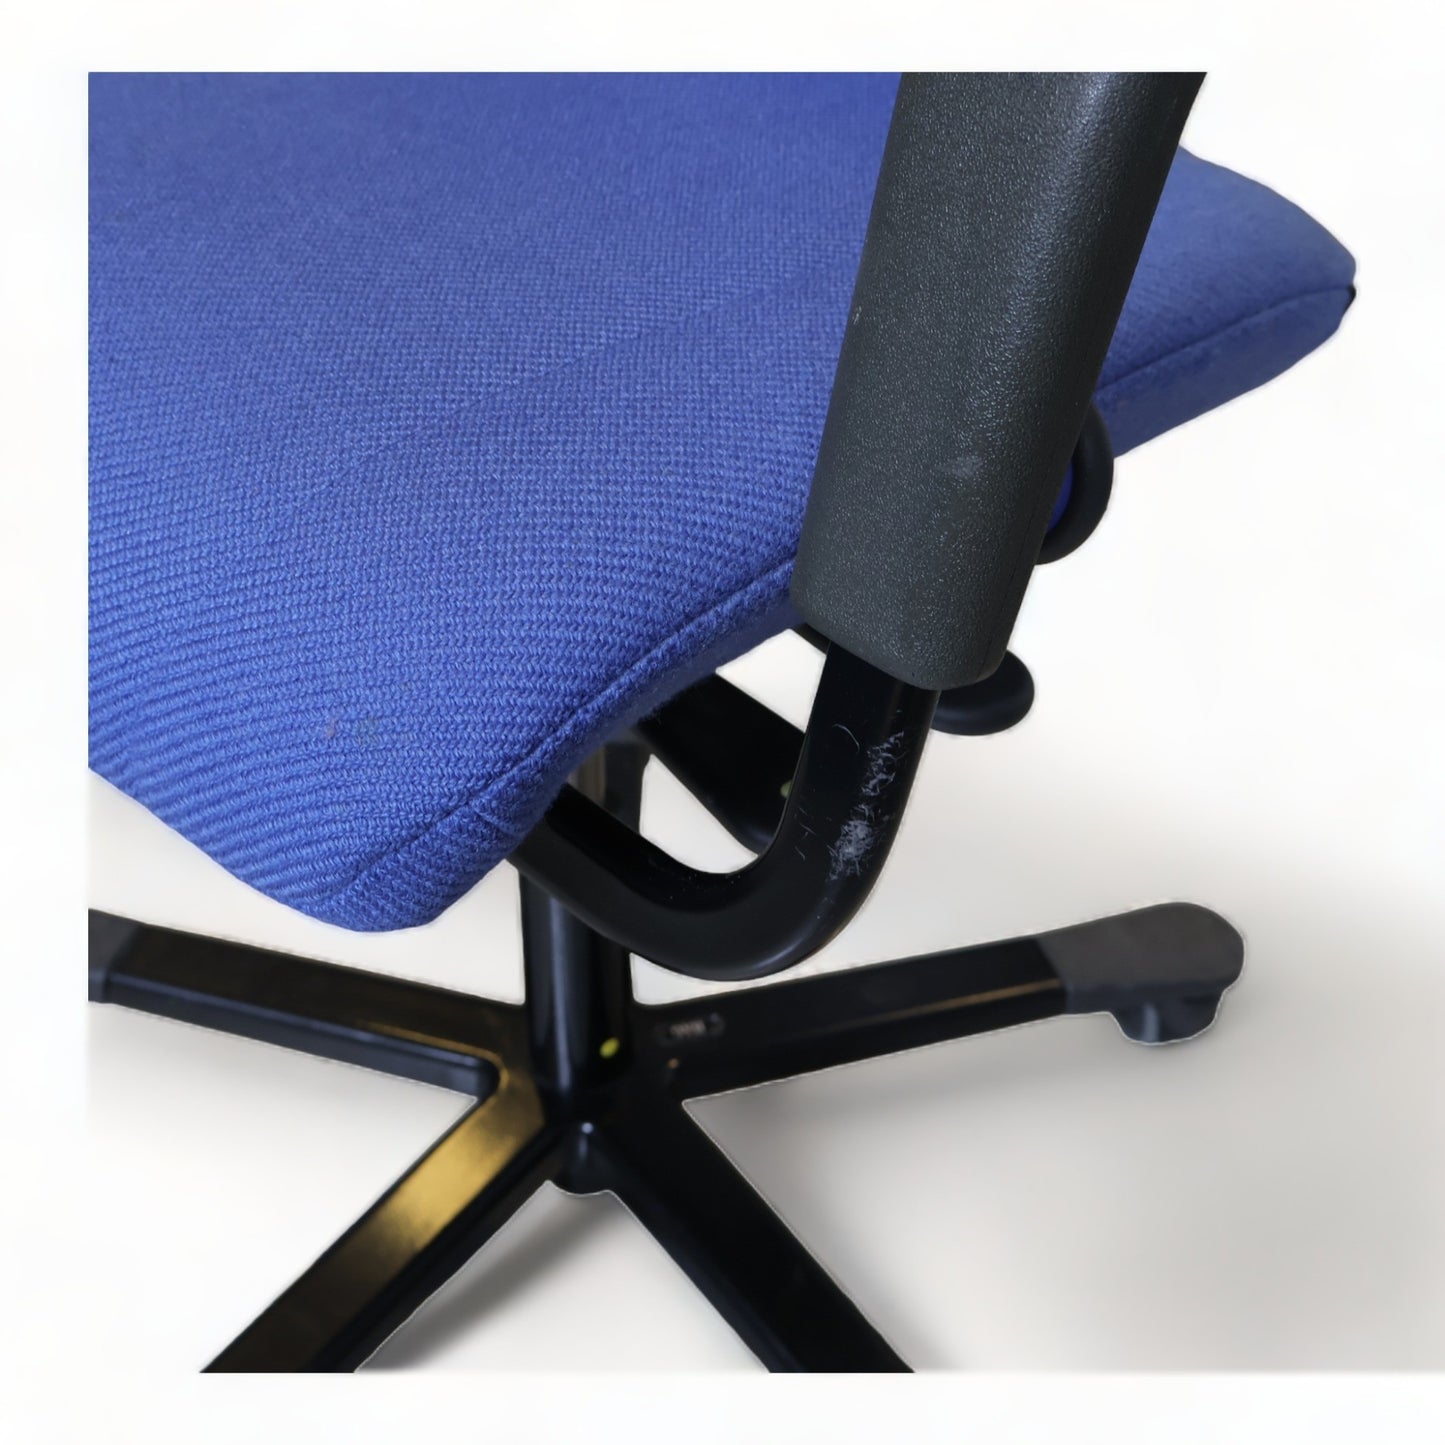 Nyrenset | Håg Credo kontorstol i fargen blå